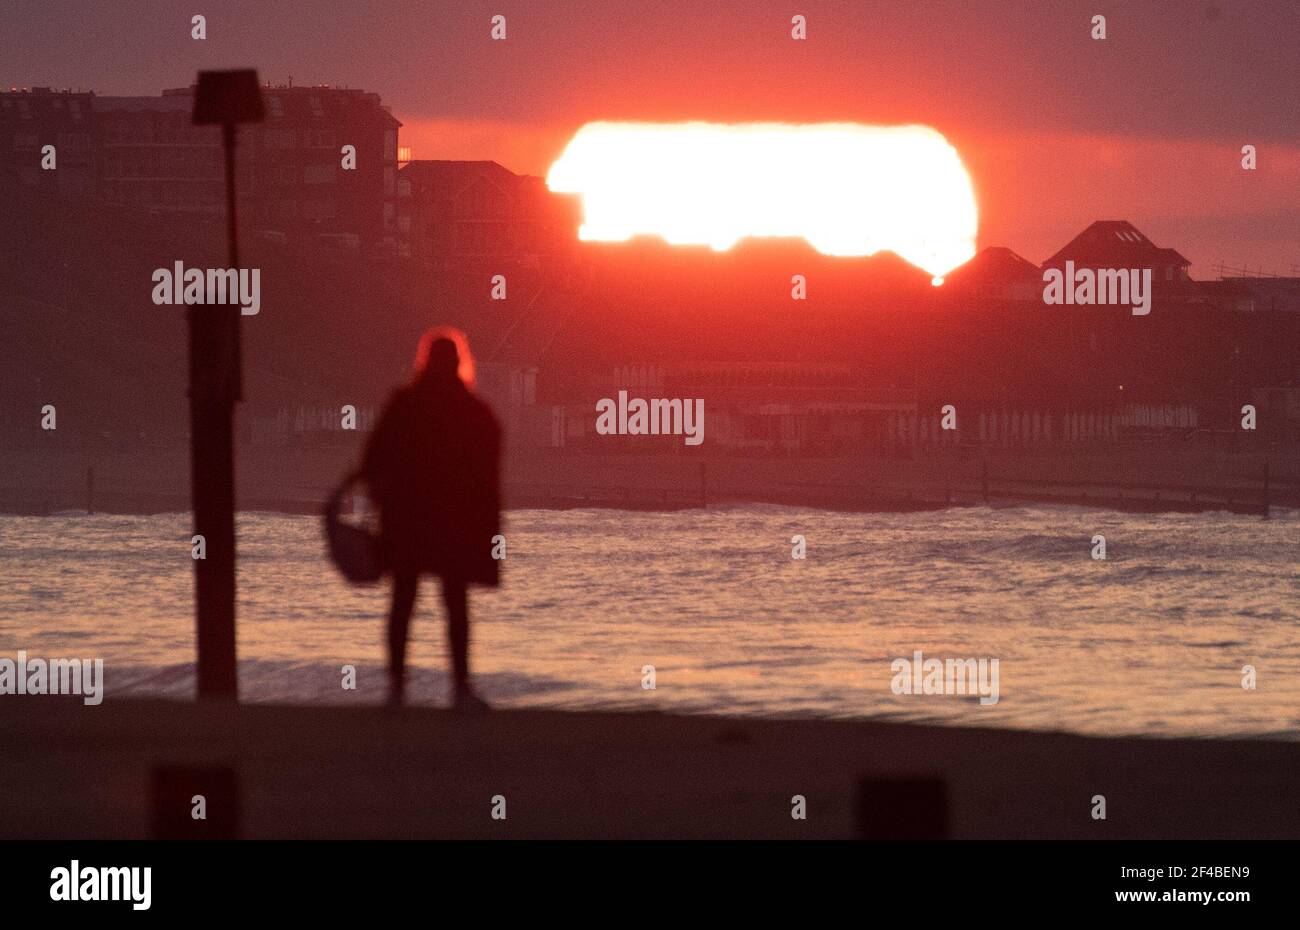 La gente guarda il sole sorgere sulla spiaggia di Boscombe a Dorset il giorno dell'equinozio di primavera. Data immagine: Sabato 20 marzo 2021. Foto Stock